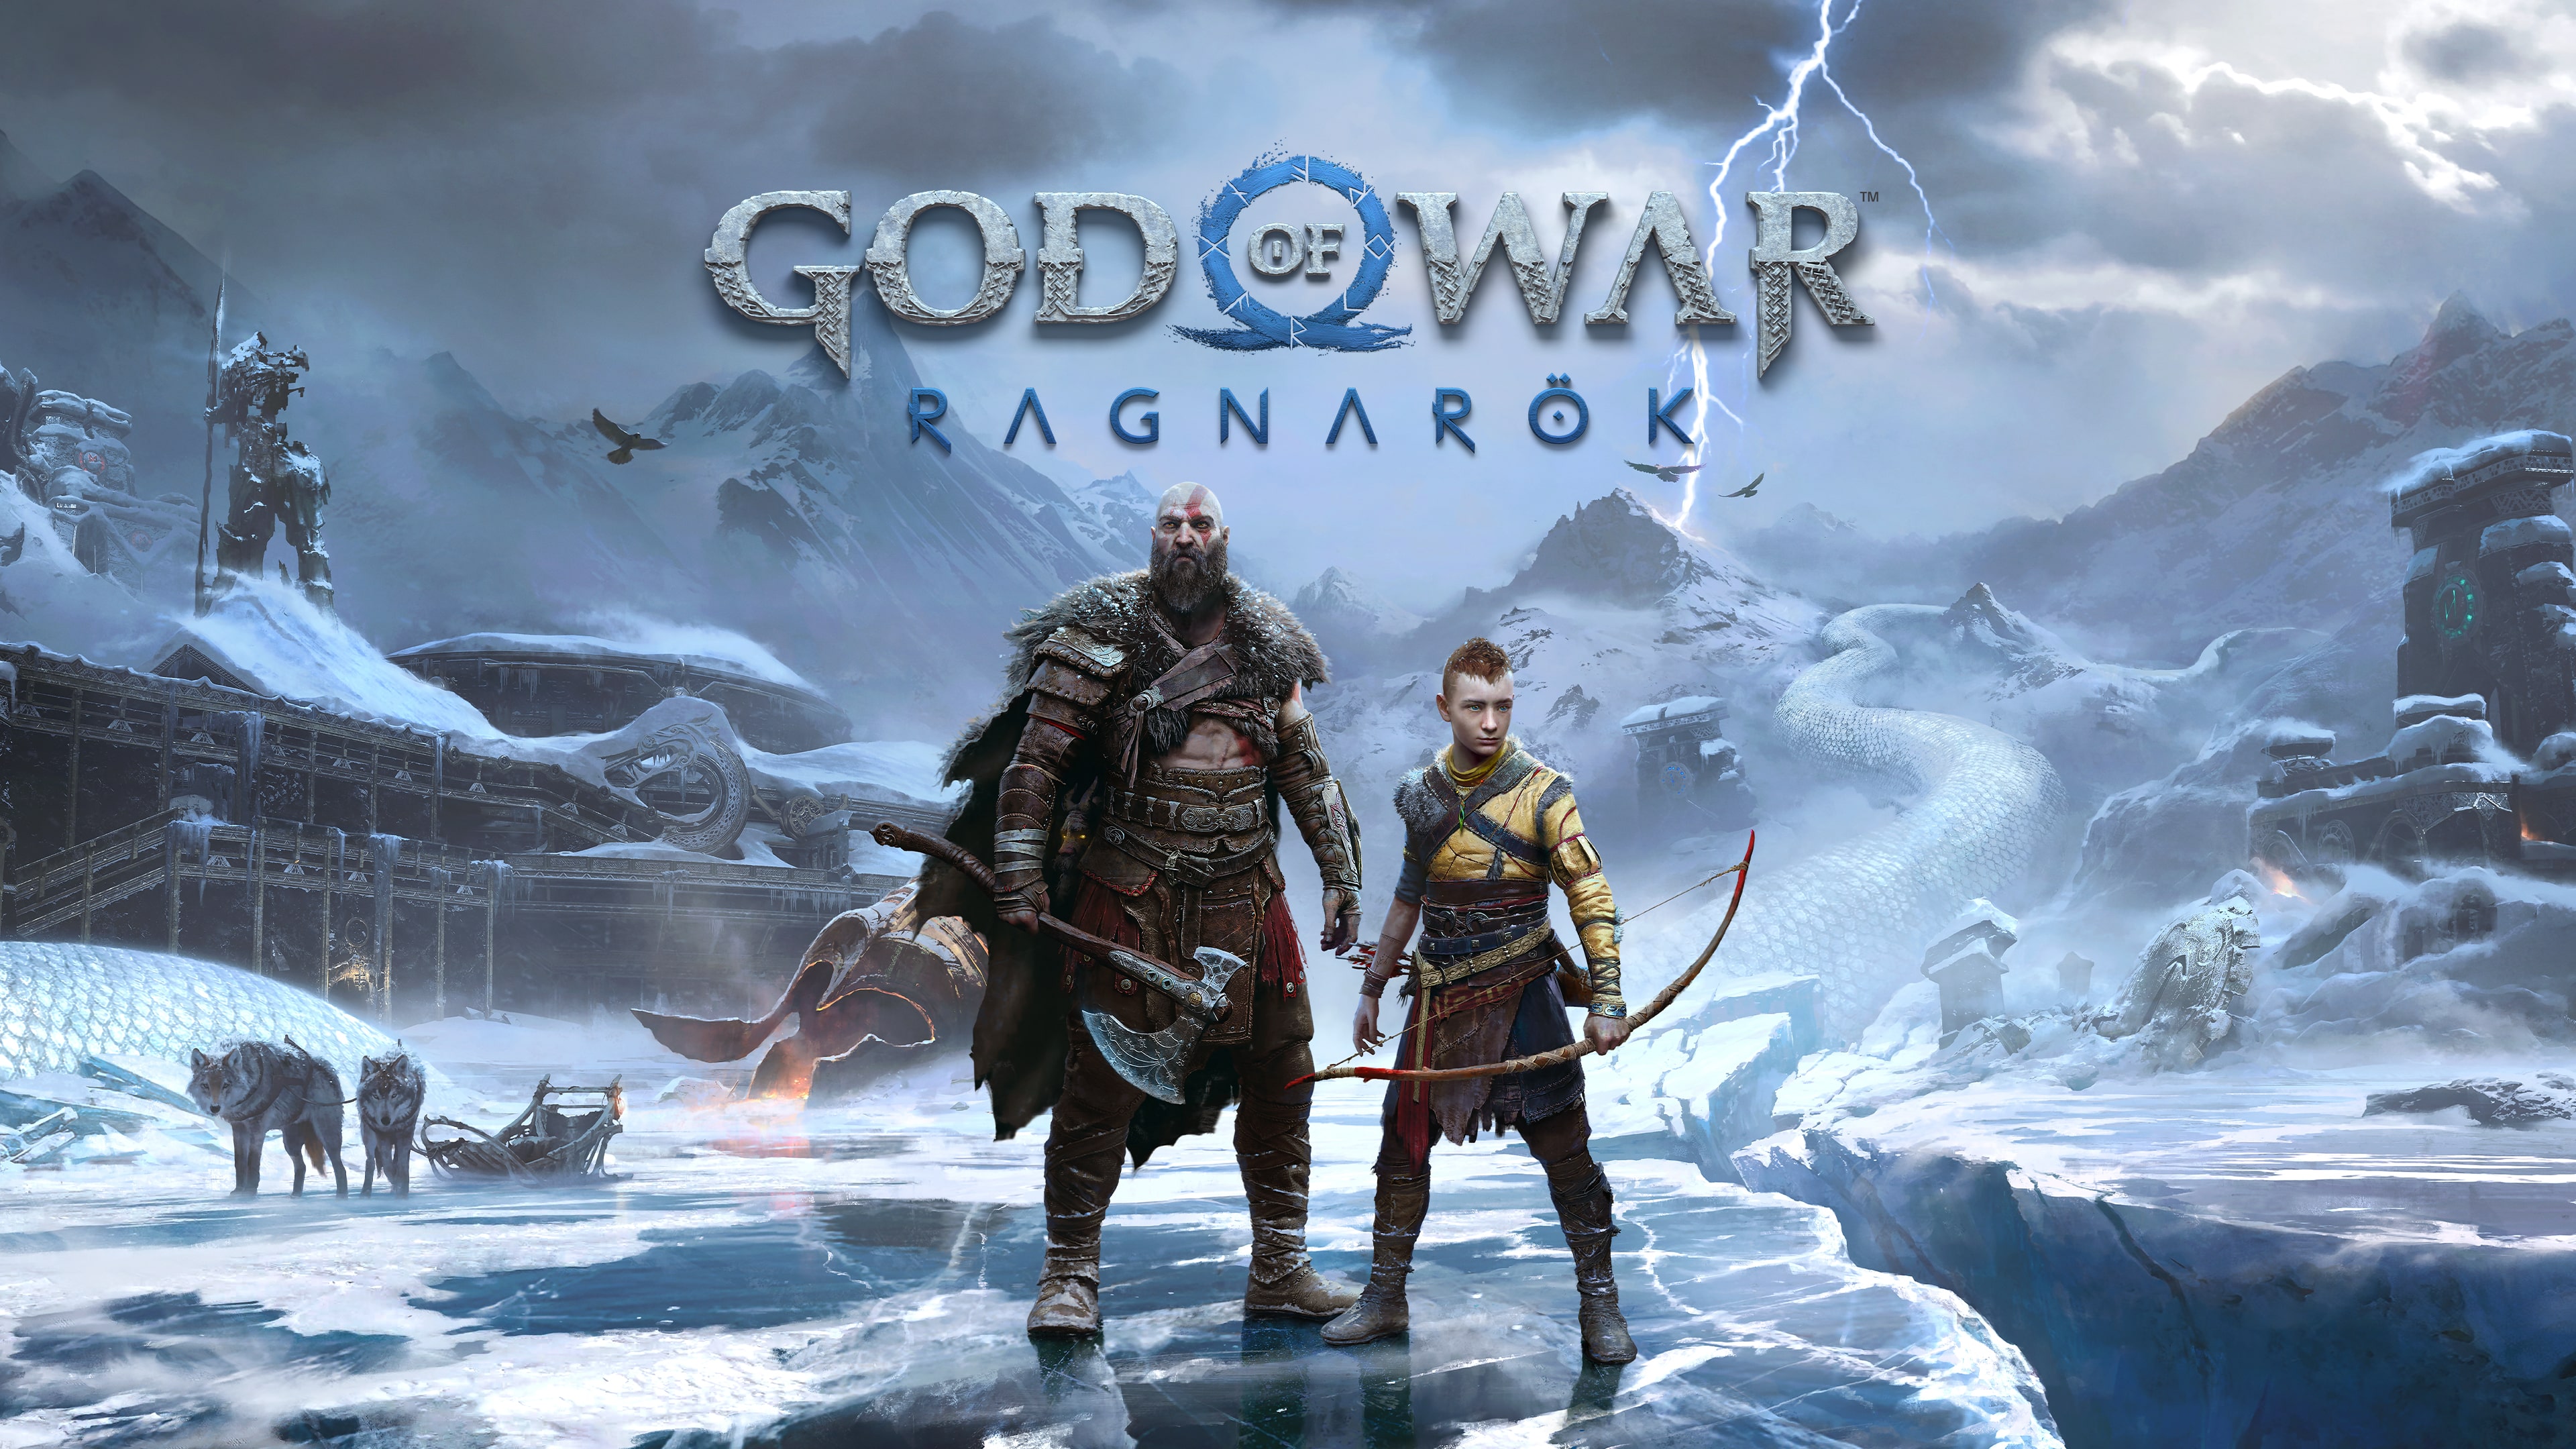 of War Ragnarök - PS5 and Games | PlayStation (US)